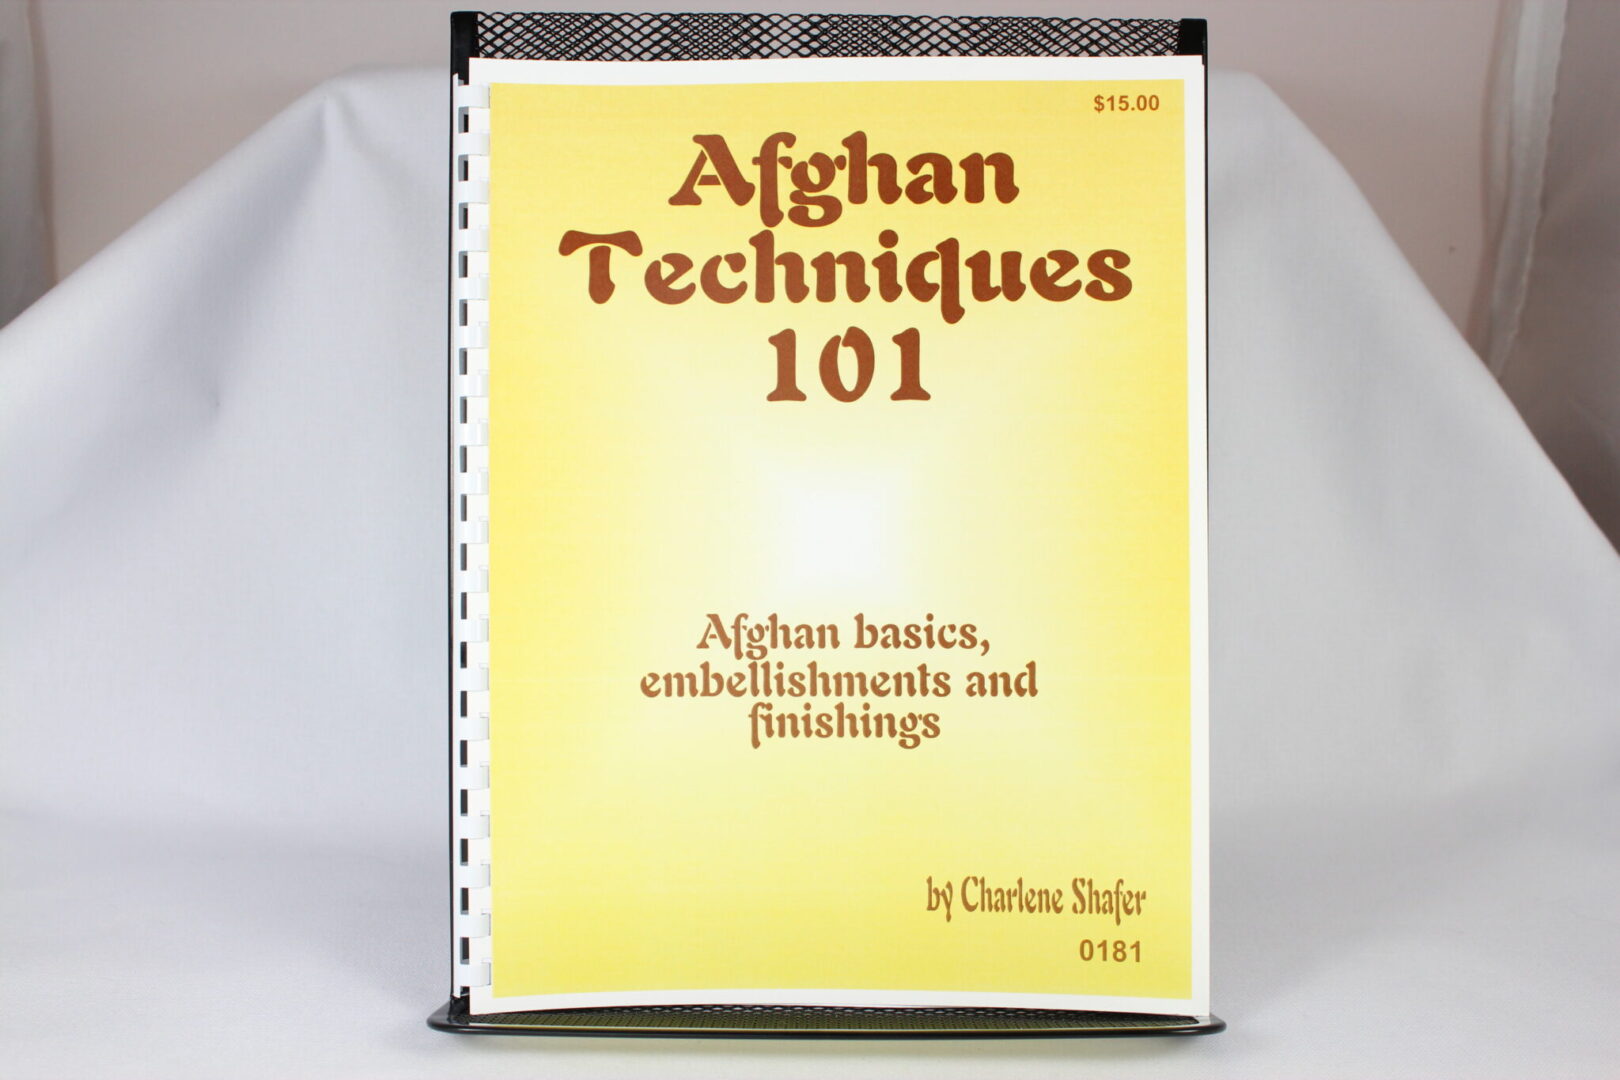 0181 Afghans Techniques 101